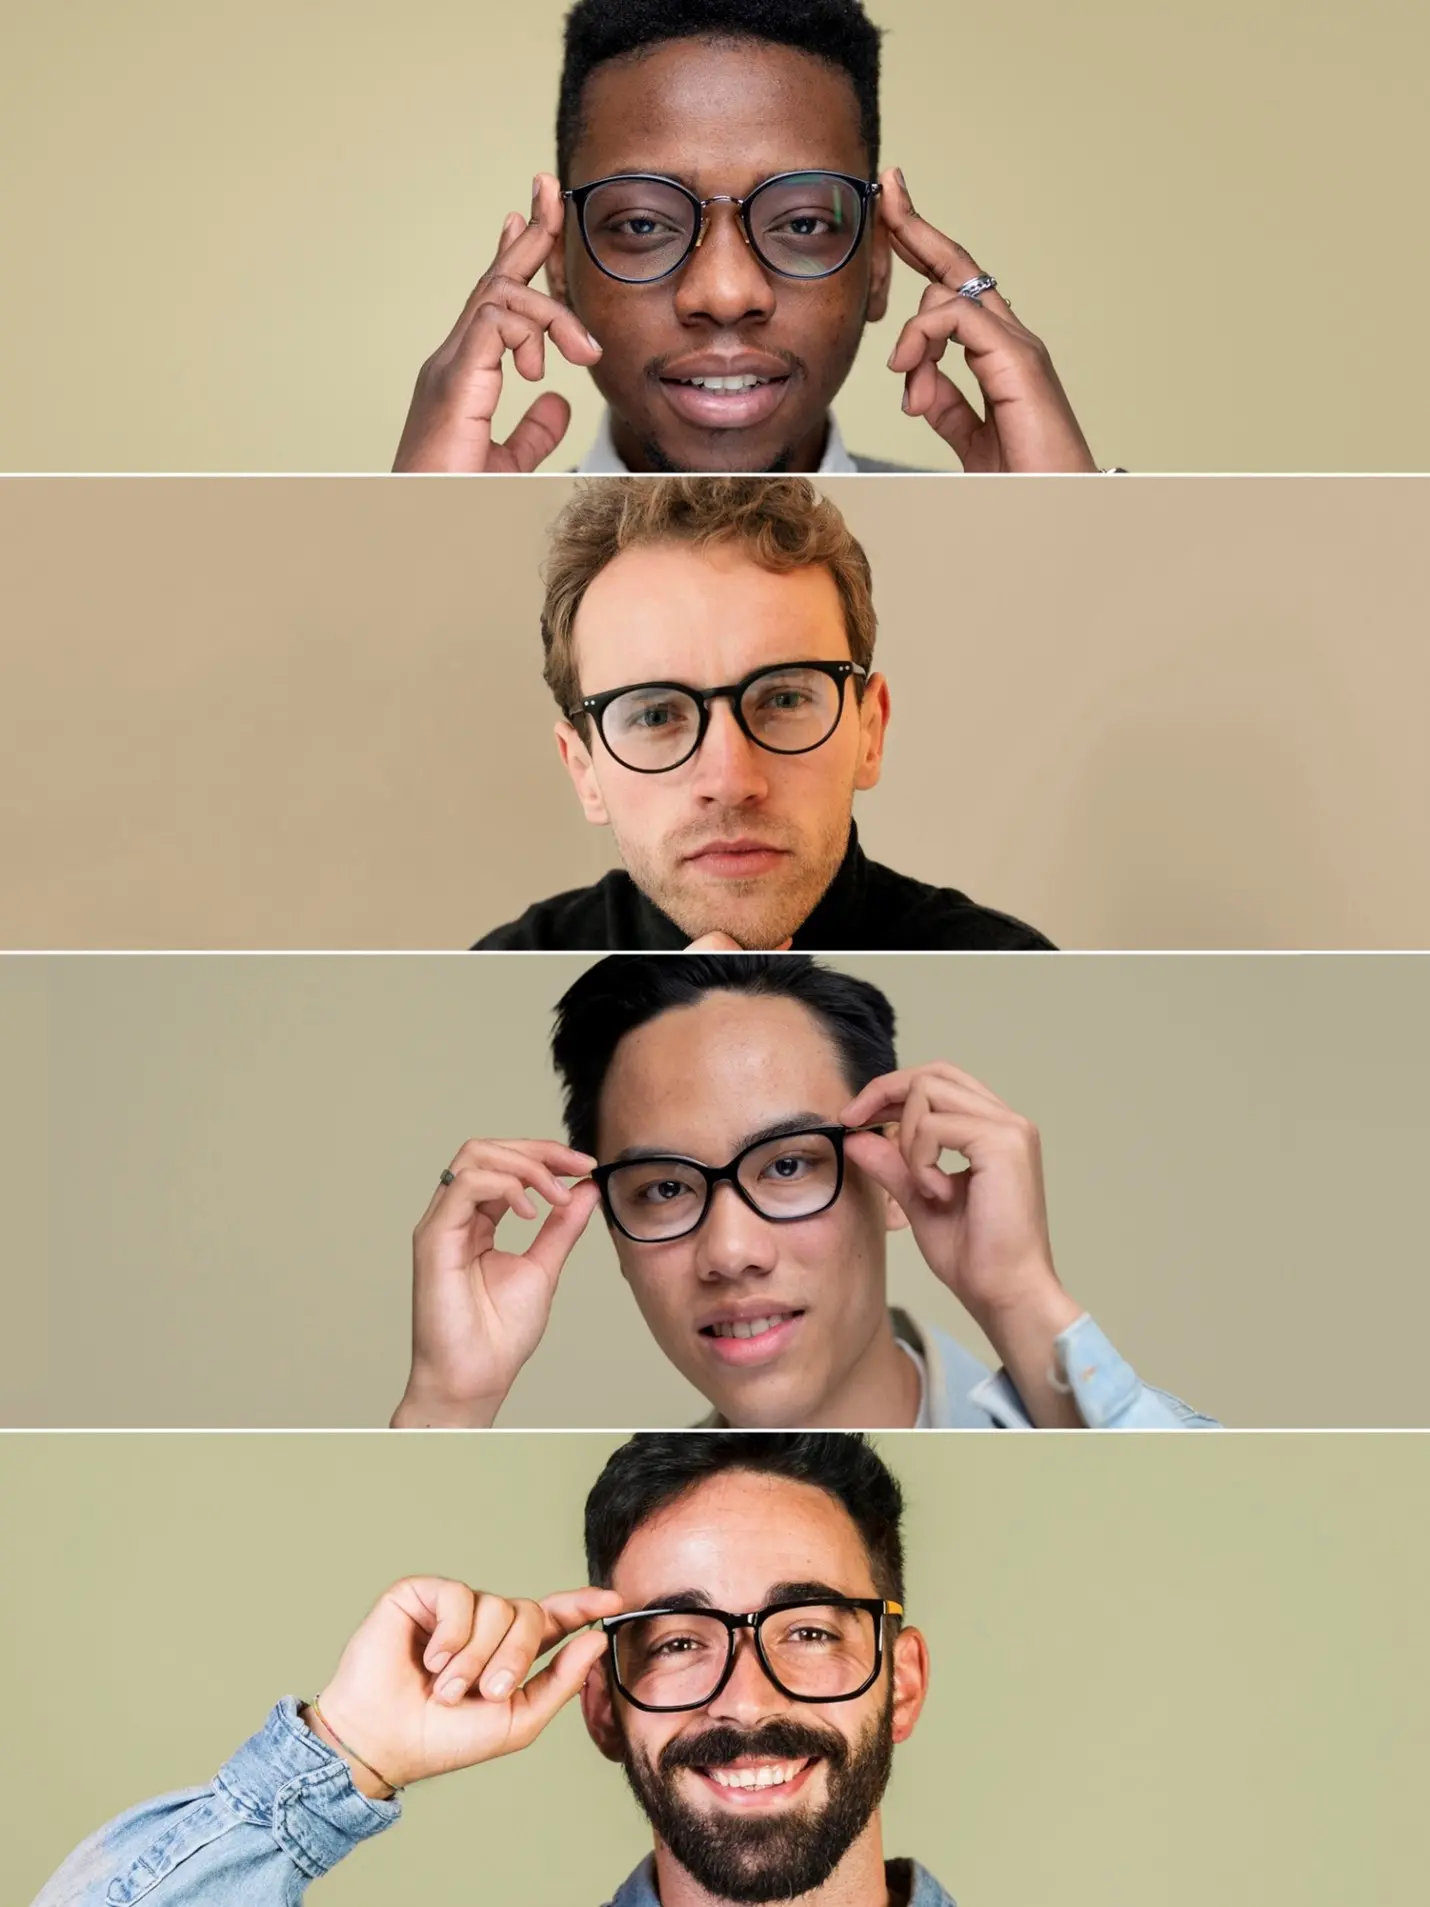 انتخاب عینک بر اساس فرم صورت و موارد مهم آن